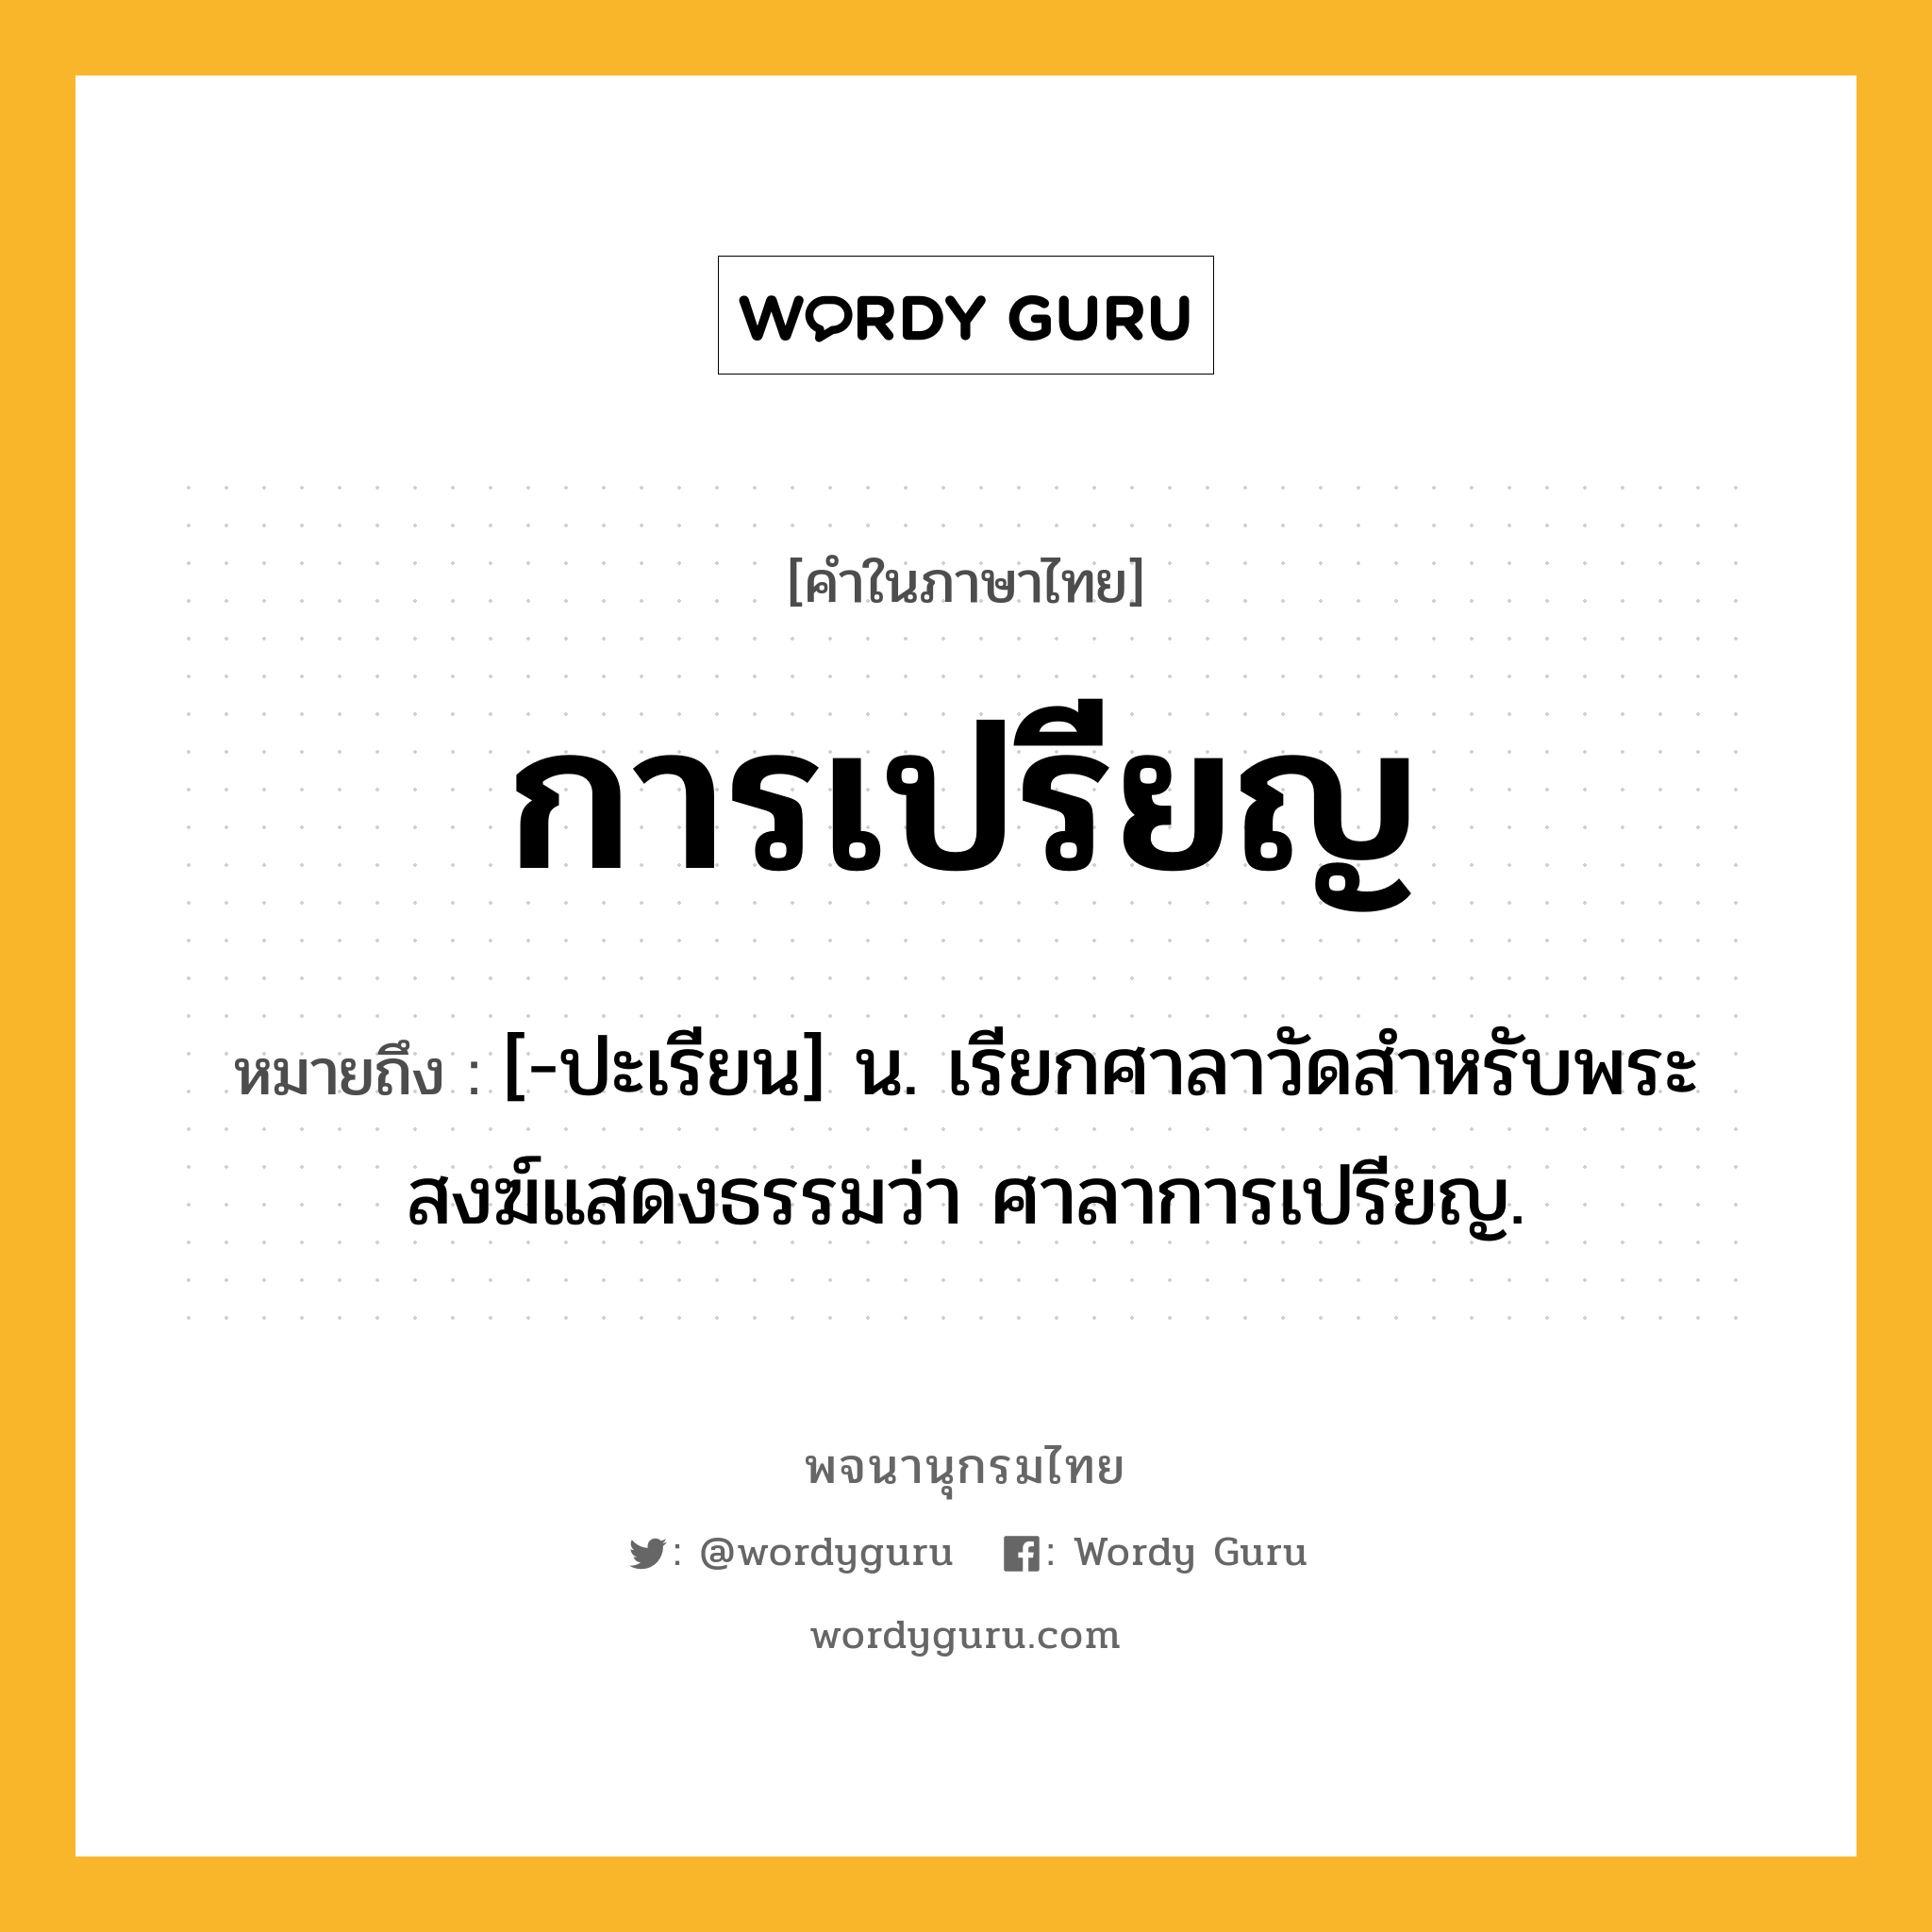 การเปรียญ หมายถึงอะไร?, คำในภาษาไทย การเปรียญ หมายถึง [-ปะเรียน] น. เรียกศาลาวัดสําหรับพระสงฆ์แสดงธรรมว่า ศาลาการเปรียญ.